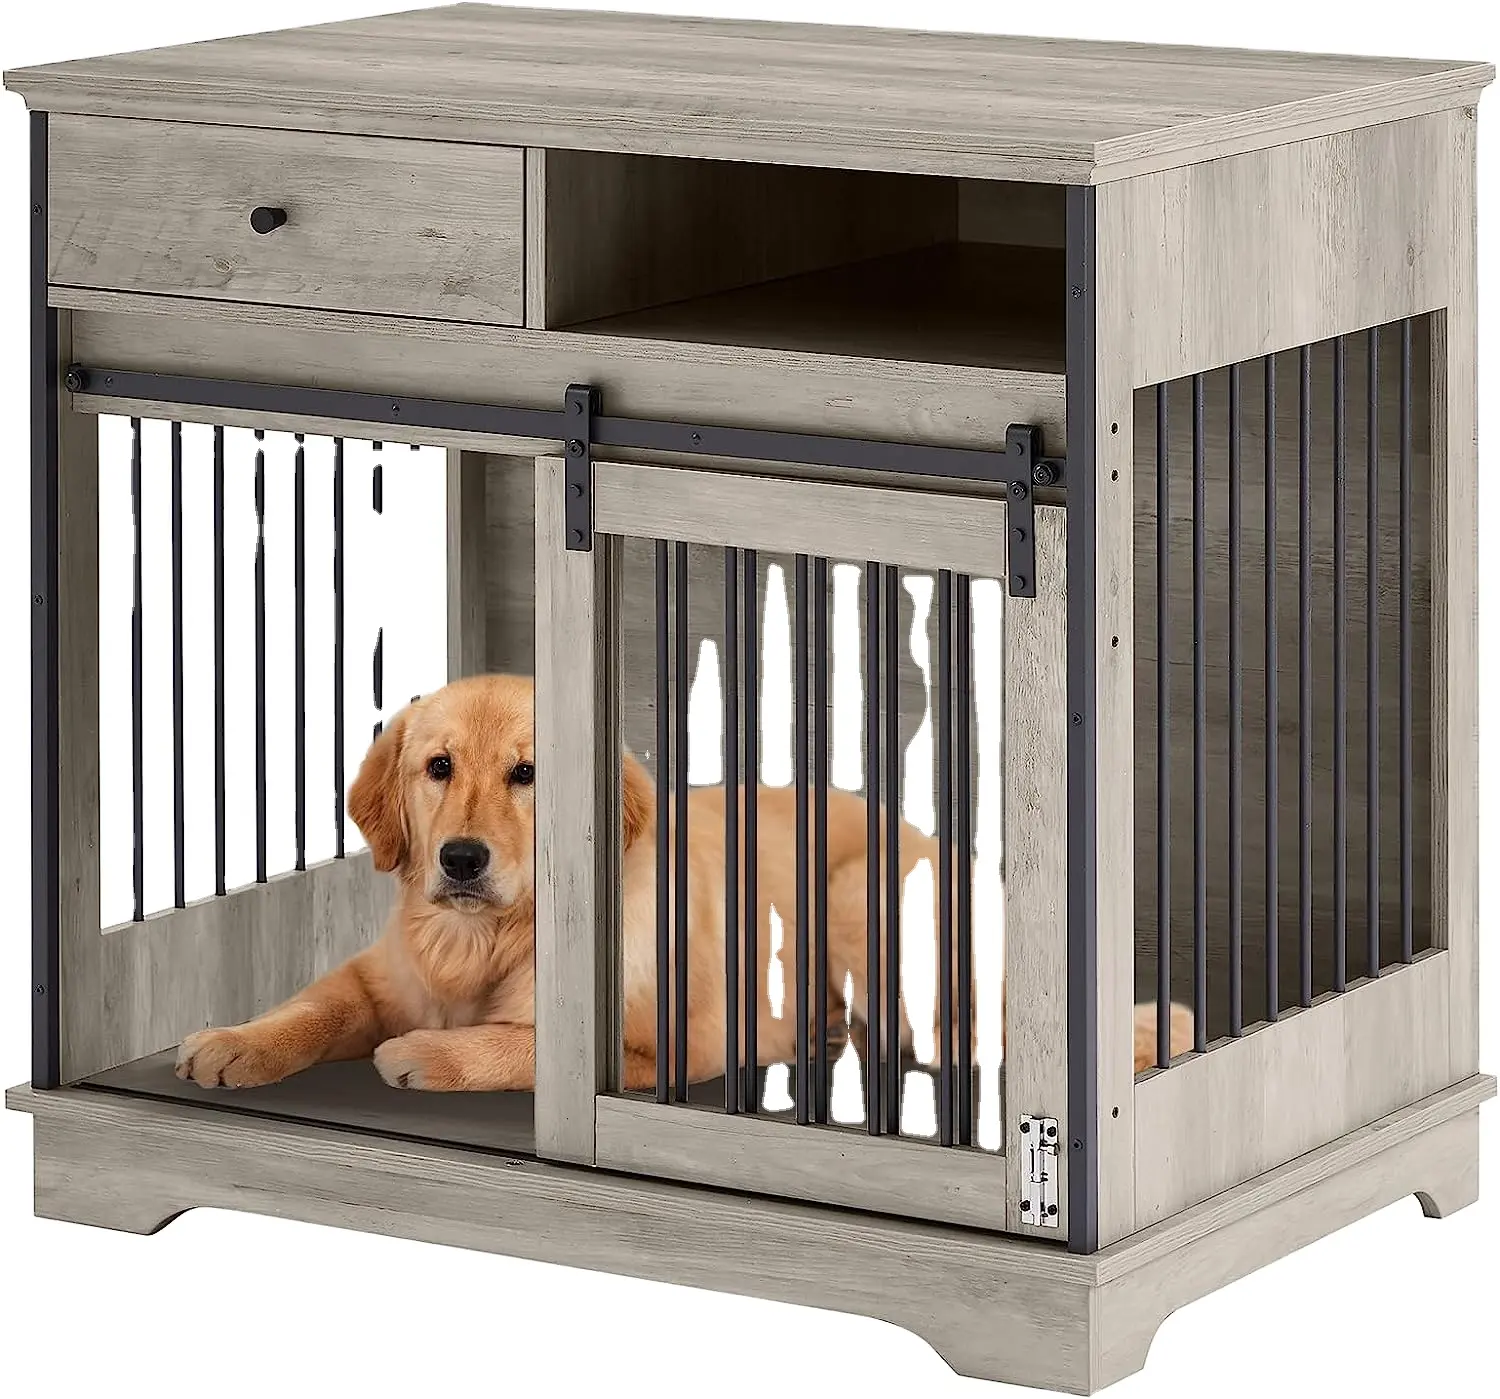 Grillage métallique soudé extérieur modulaire robuste 6x10 extra large maison extérieure cage pour animaux de compagnie chenils pour chiens